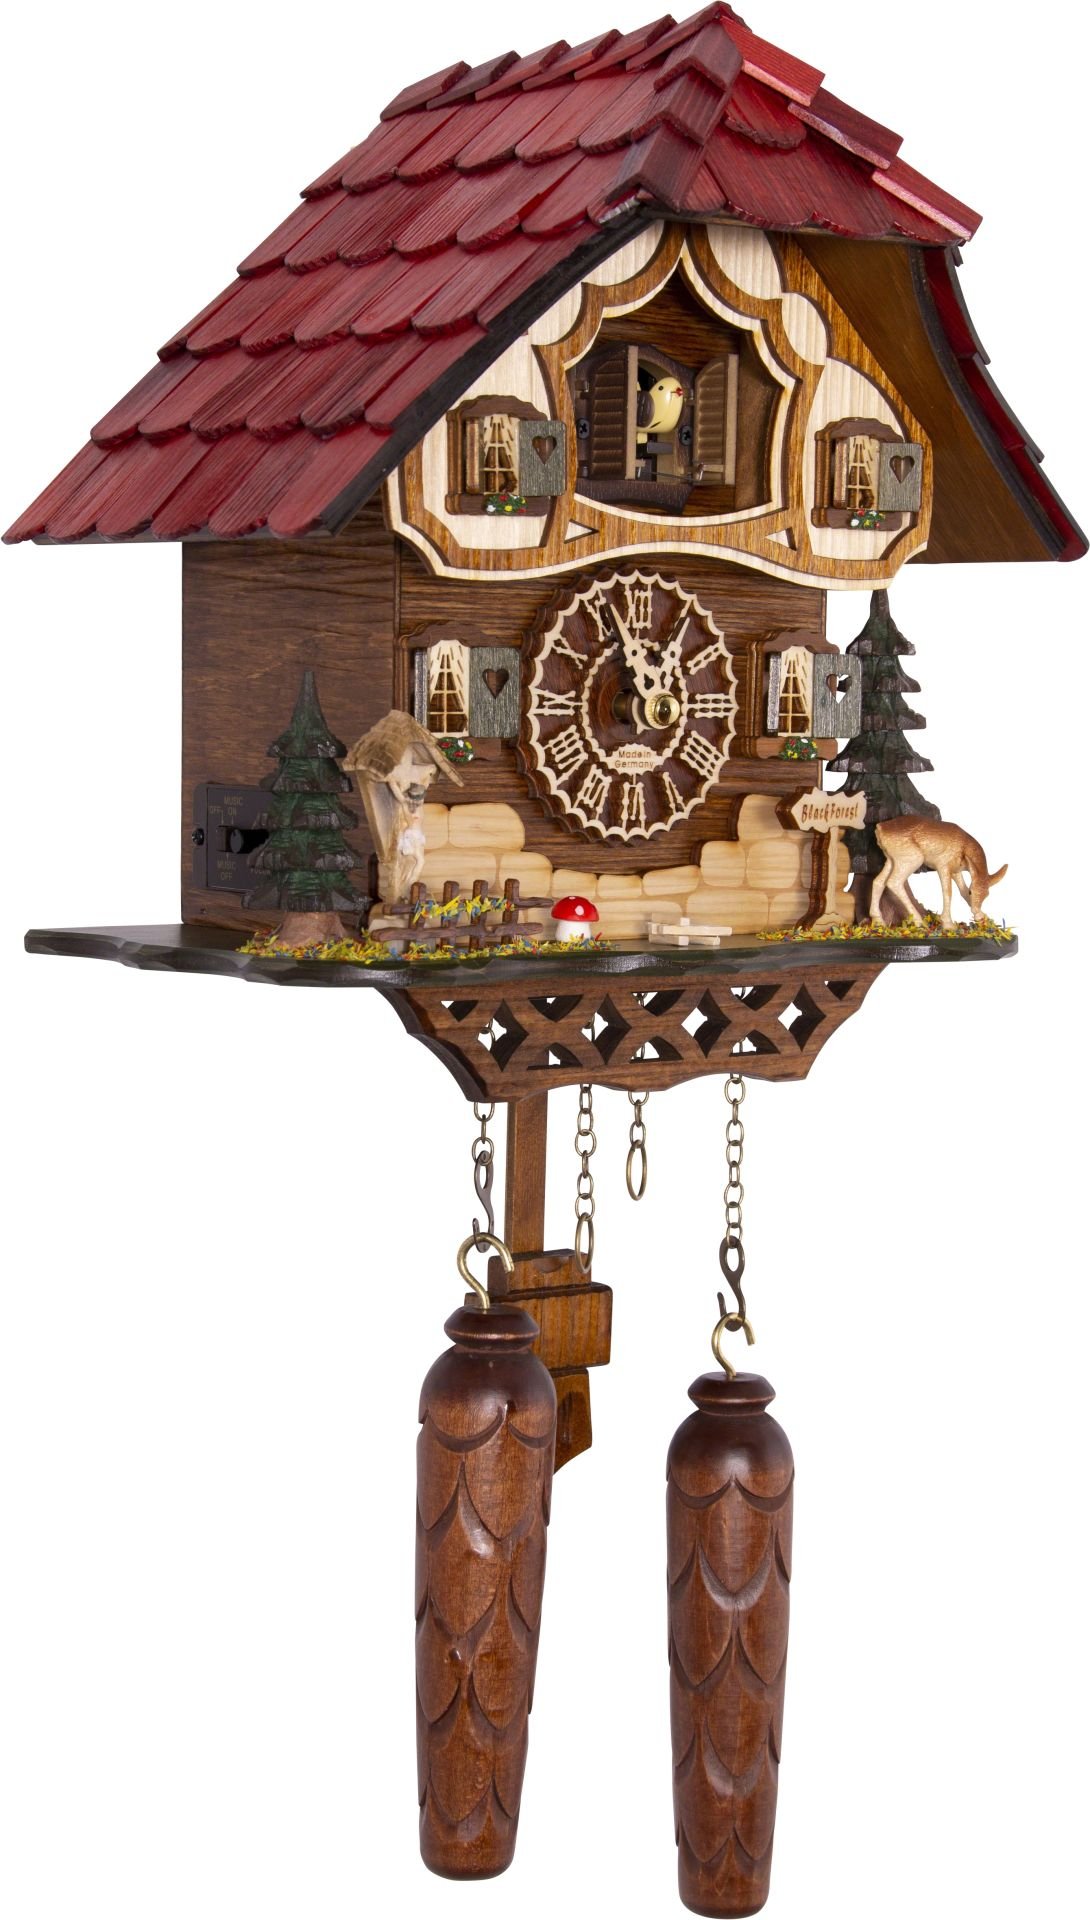 Kuckucksuhr Chalet-Stil Quarz-Uhrwerk 26cm von Trenkle Uhren